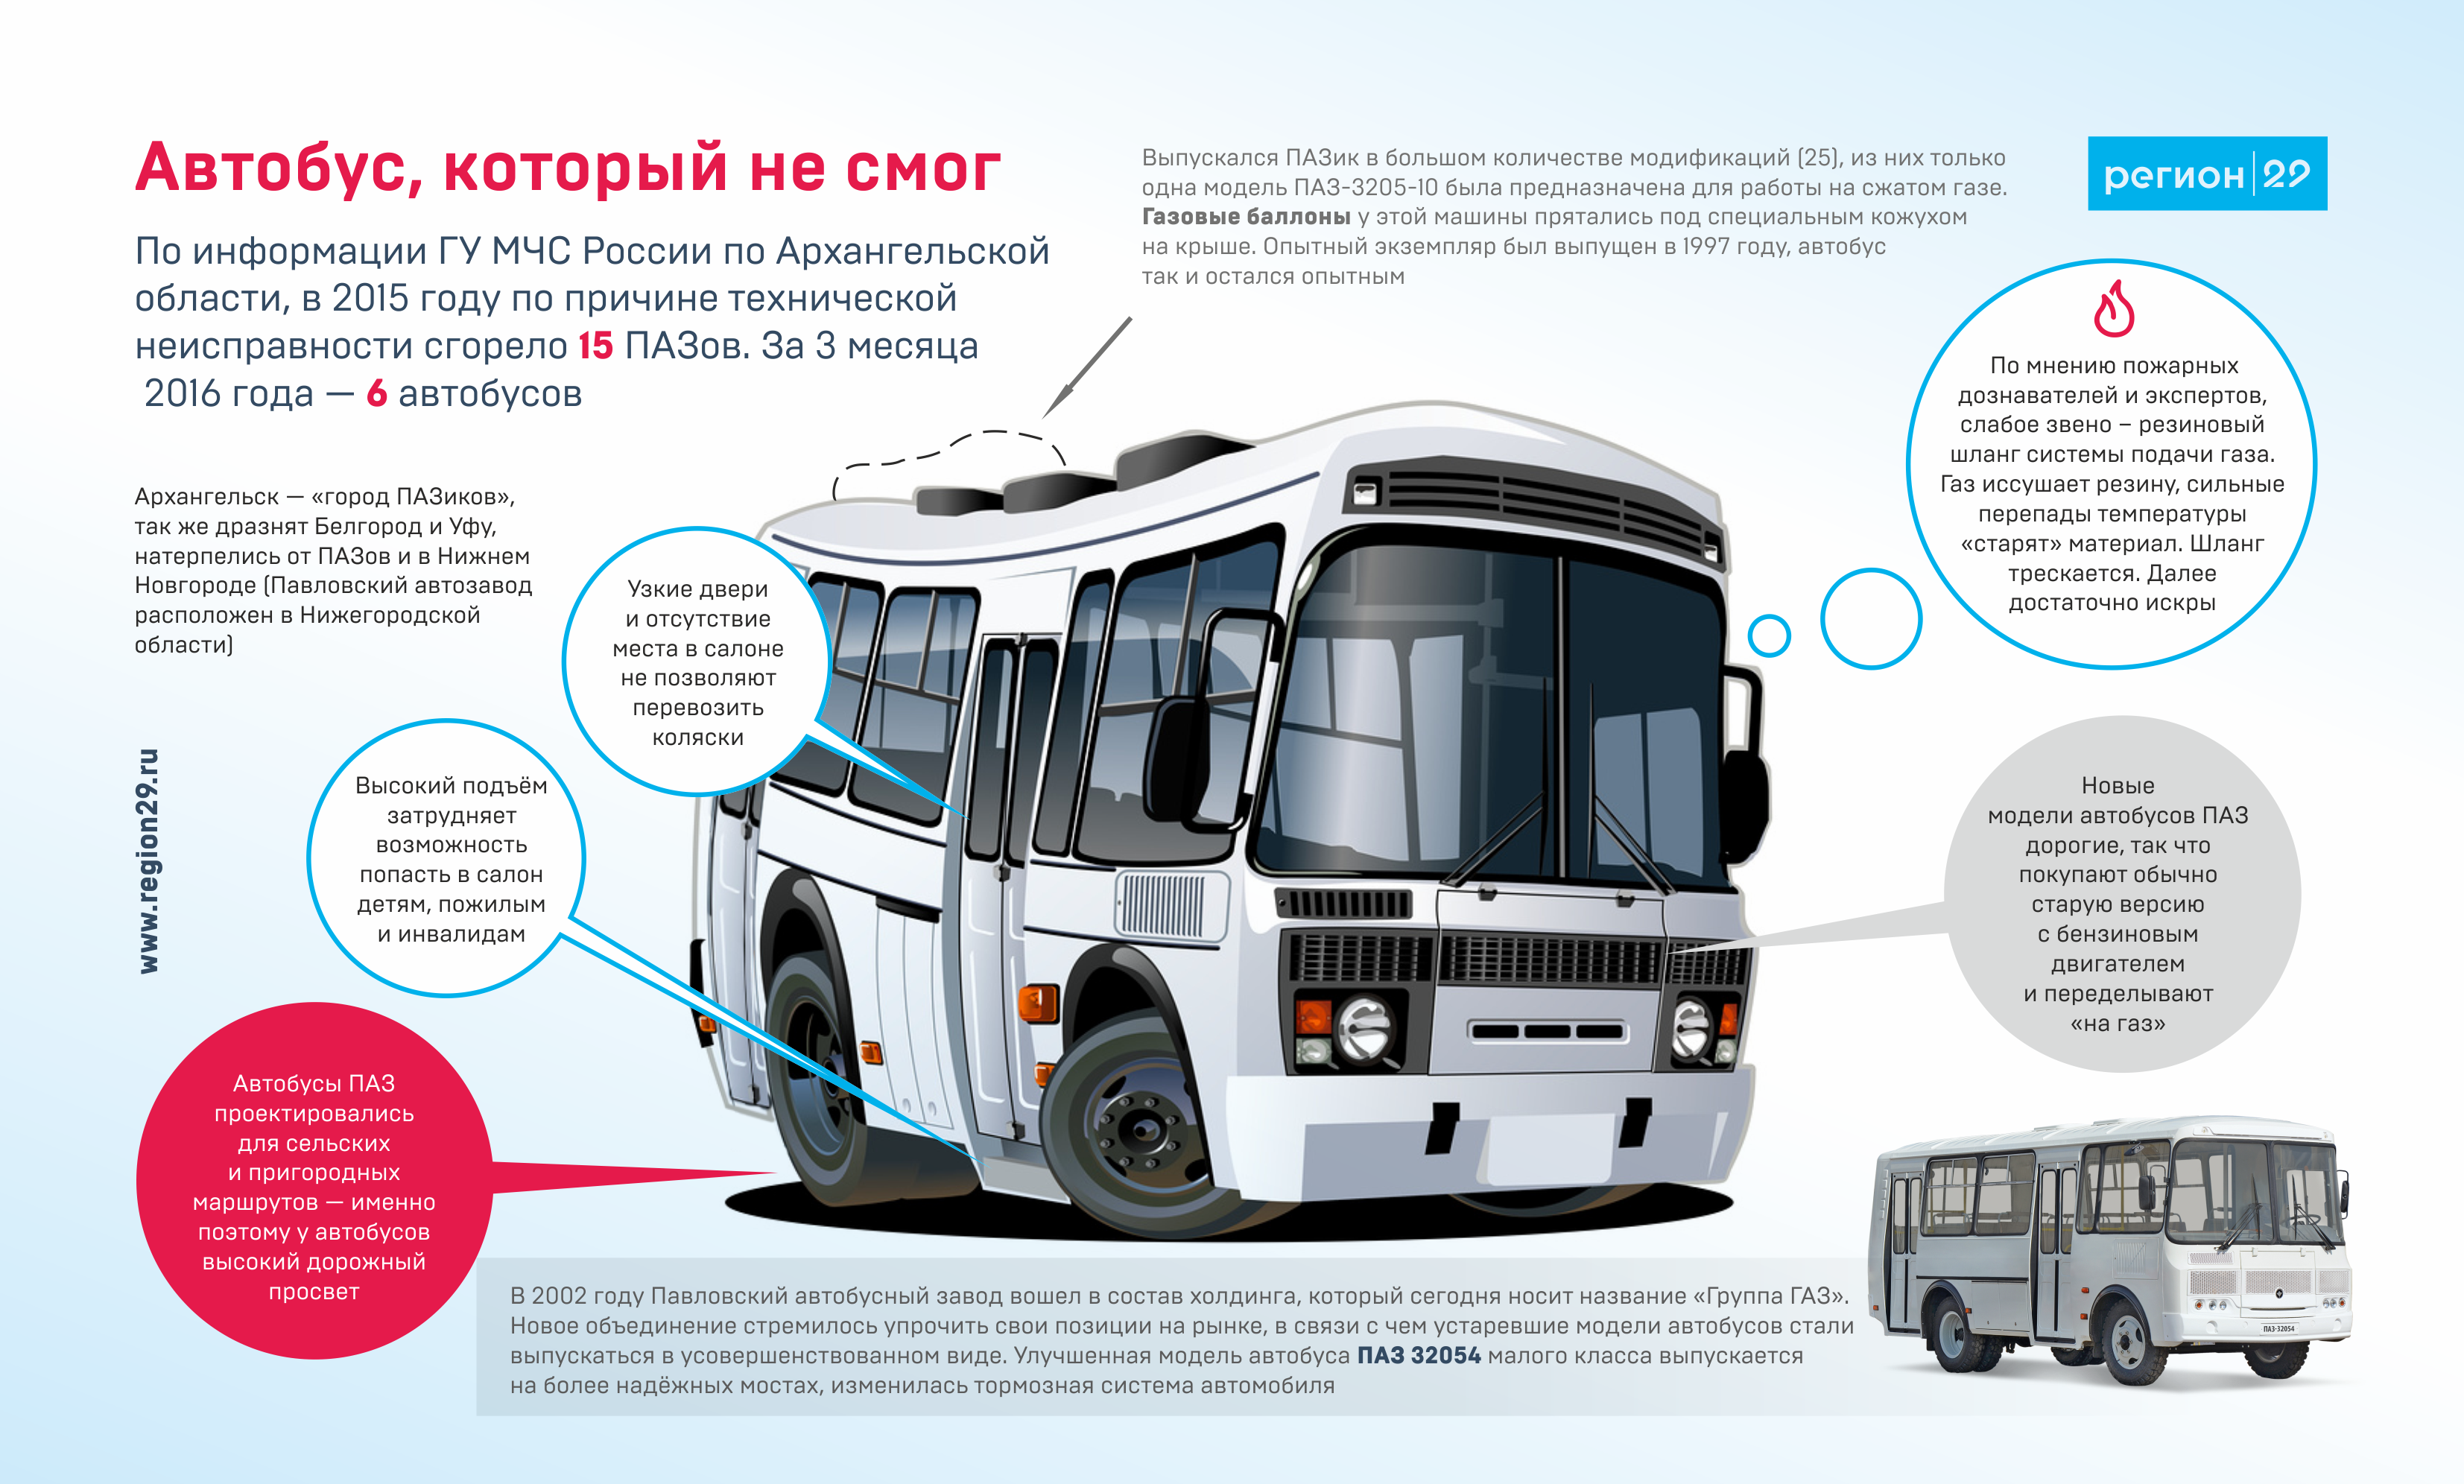 Автобус вектор next технические характеристики и салон, дизайн и габаритные размеры